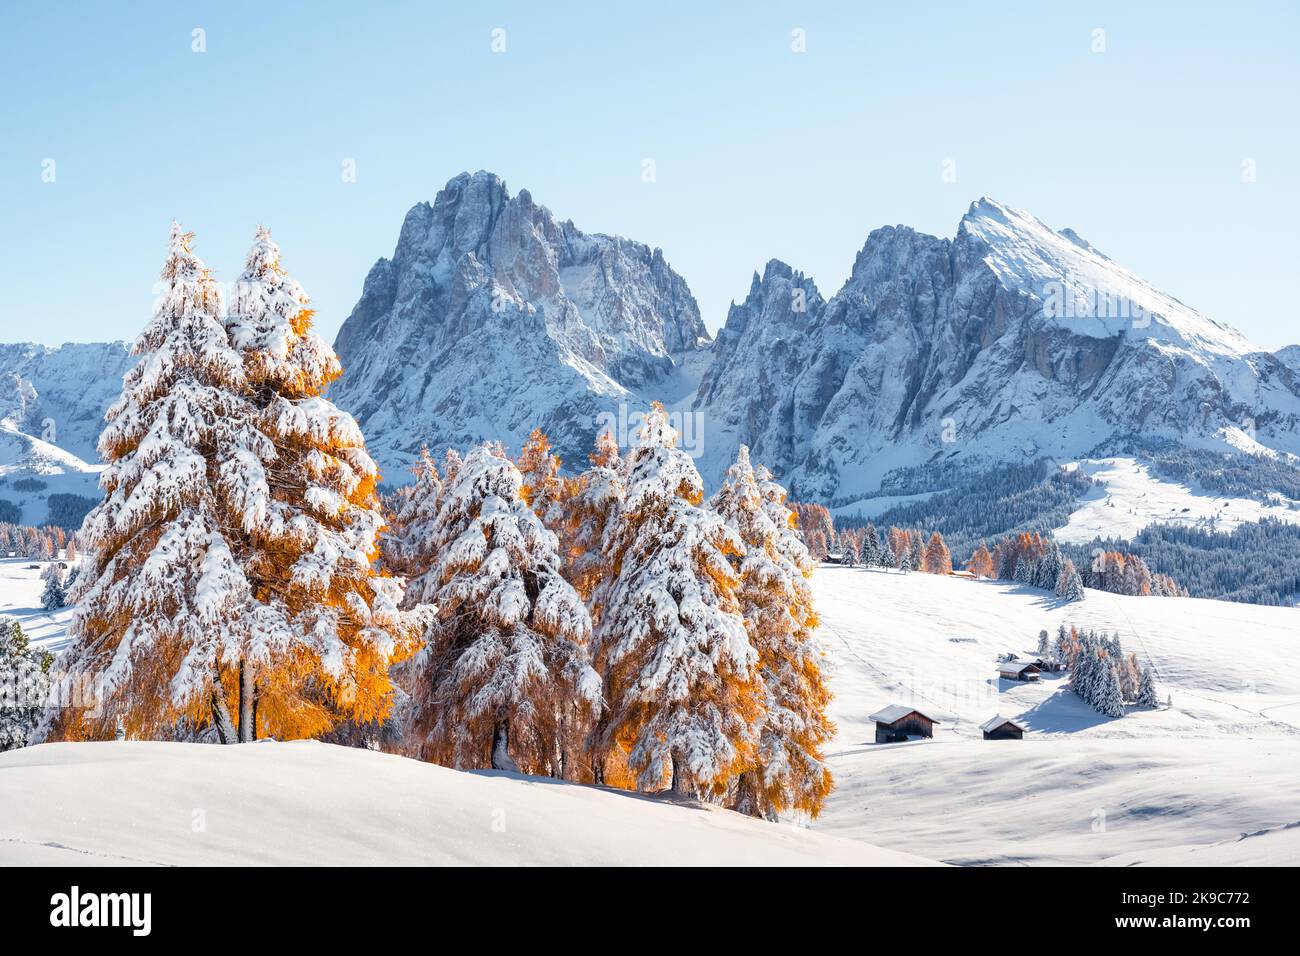 Malerische Landschaft mit kleiner Holzhütte auf der Seiser Alm bei Sonnenaufgang. Seiser Alm, Dolomiten, Italien. Verschneite Hügel mit orangefarbener Lärche und Langkofelgruppe Stockfoto